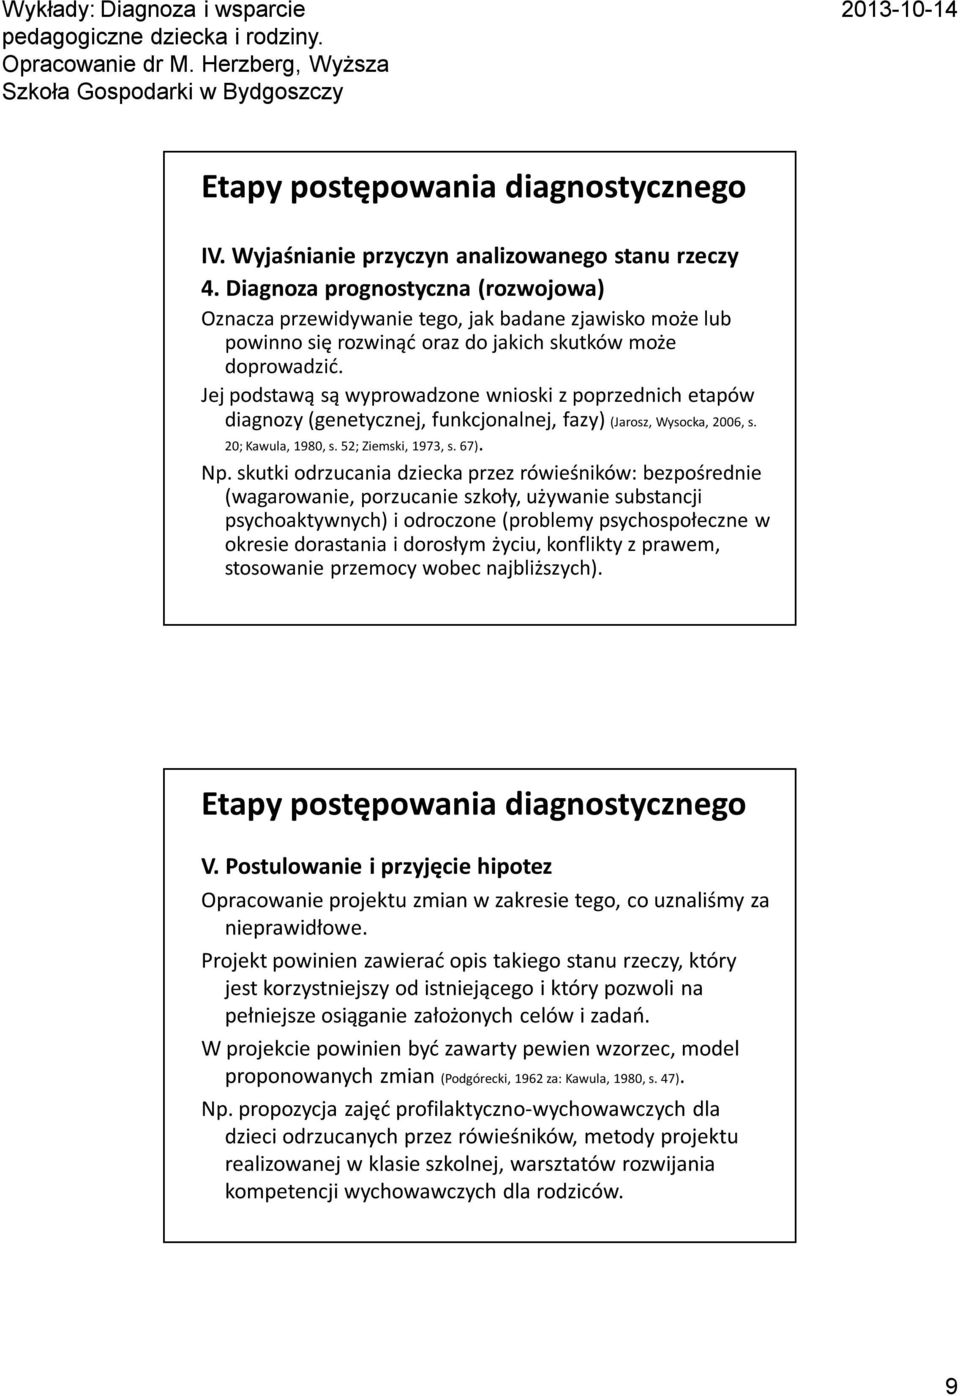 Jej podstawą są wyprowadzone wnioski z poprzednich etapów diagnozy (genetycznej, funkcjonalnej, fazy) (Jarosz, Wysocka, 2006, s. 20; Kawula, 1980, s. 52; Ziemski, 1973, s. 67). Np.